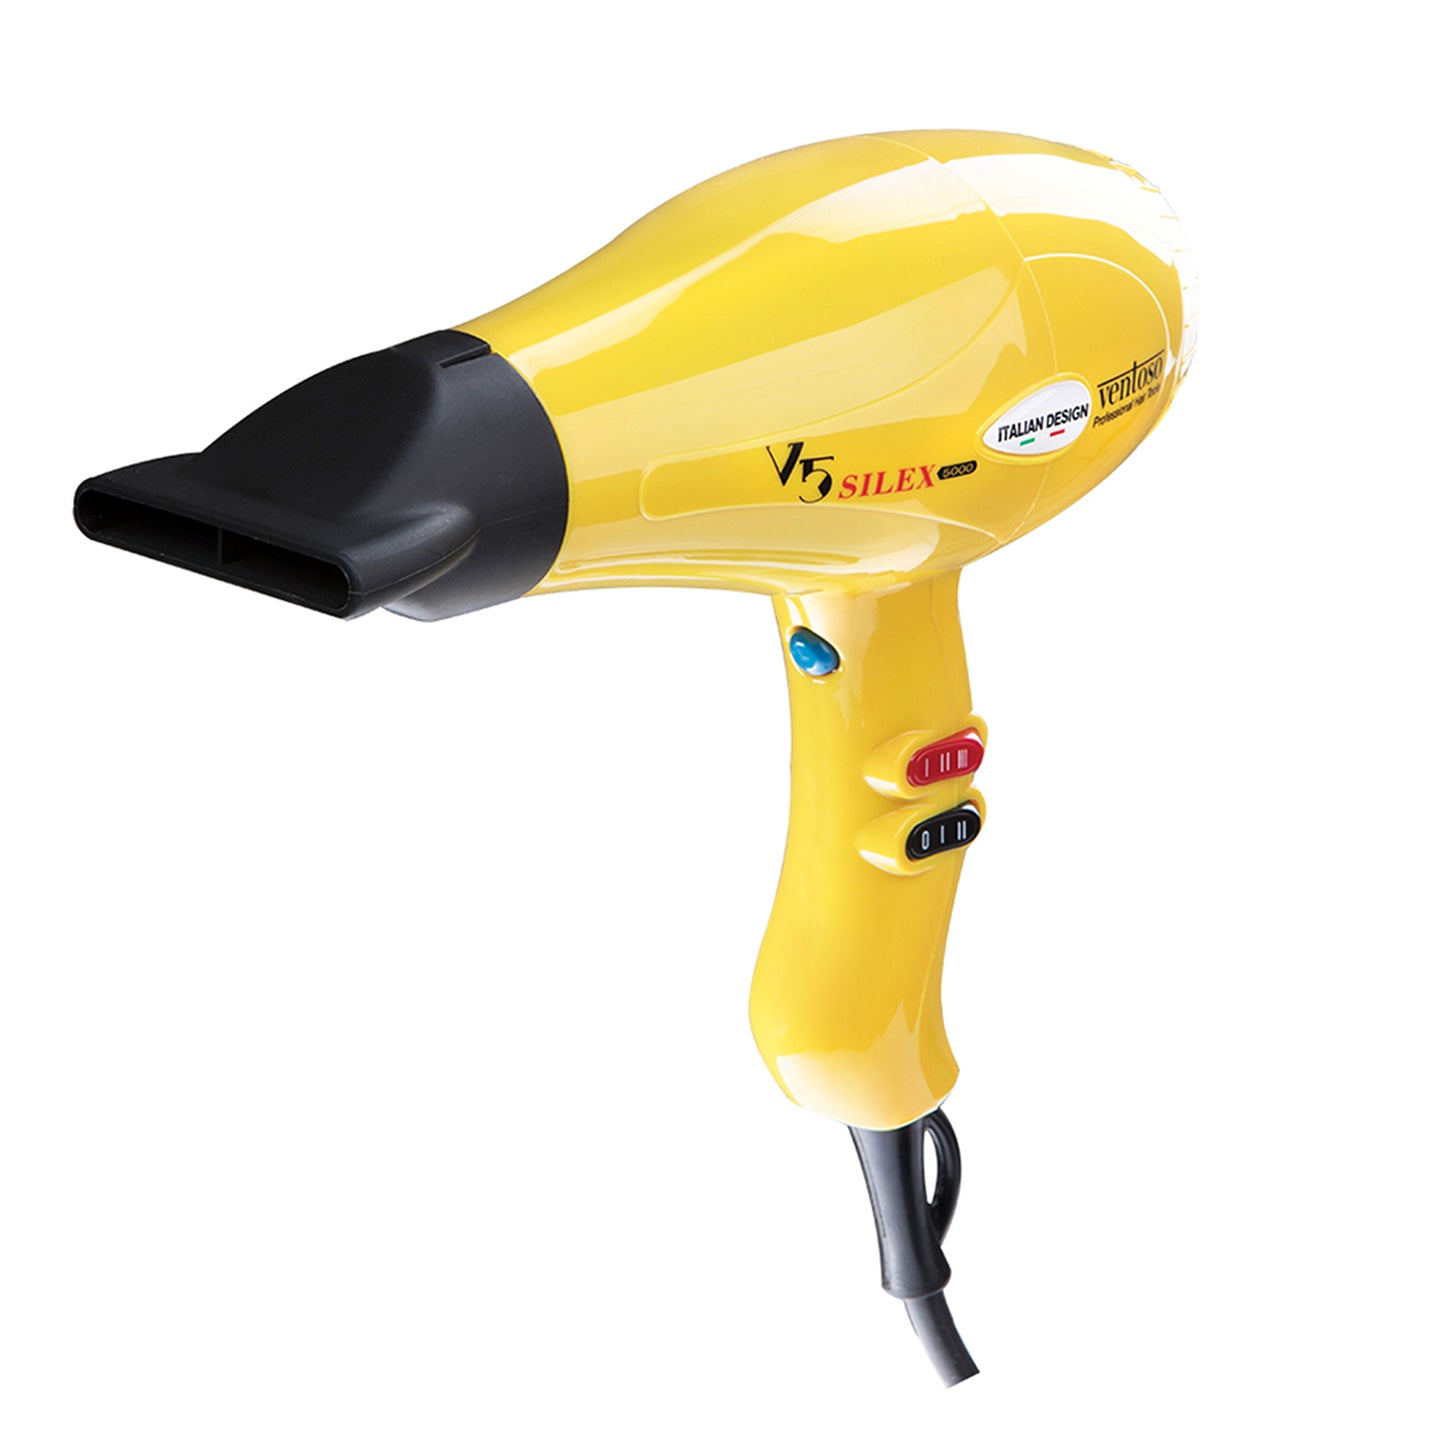 Asciugacapelli professionale Ventoso V5 Silex5000 con Vigo giallo